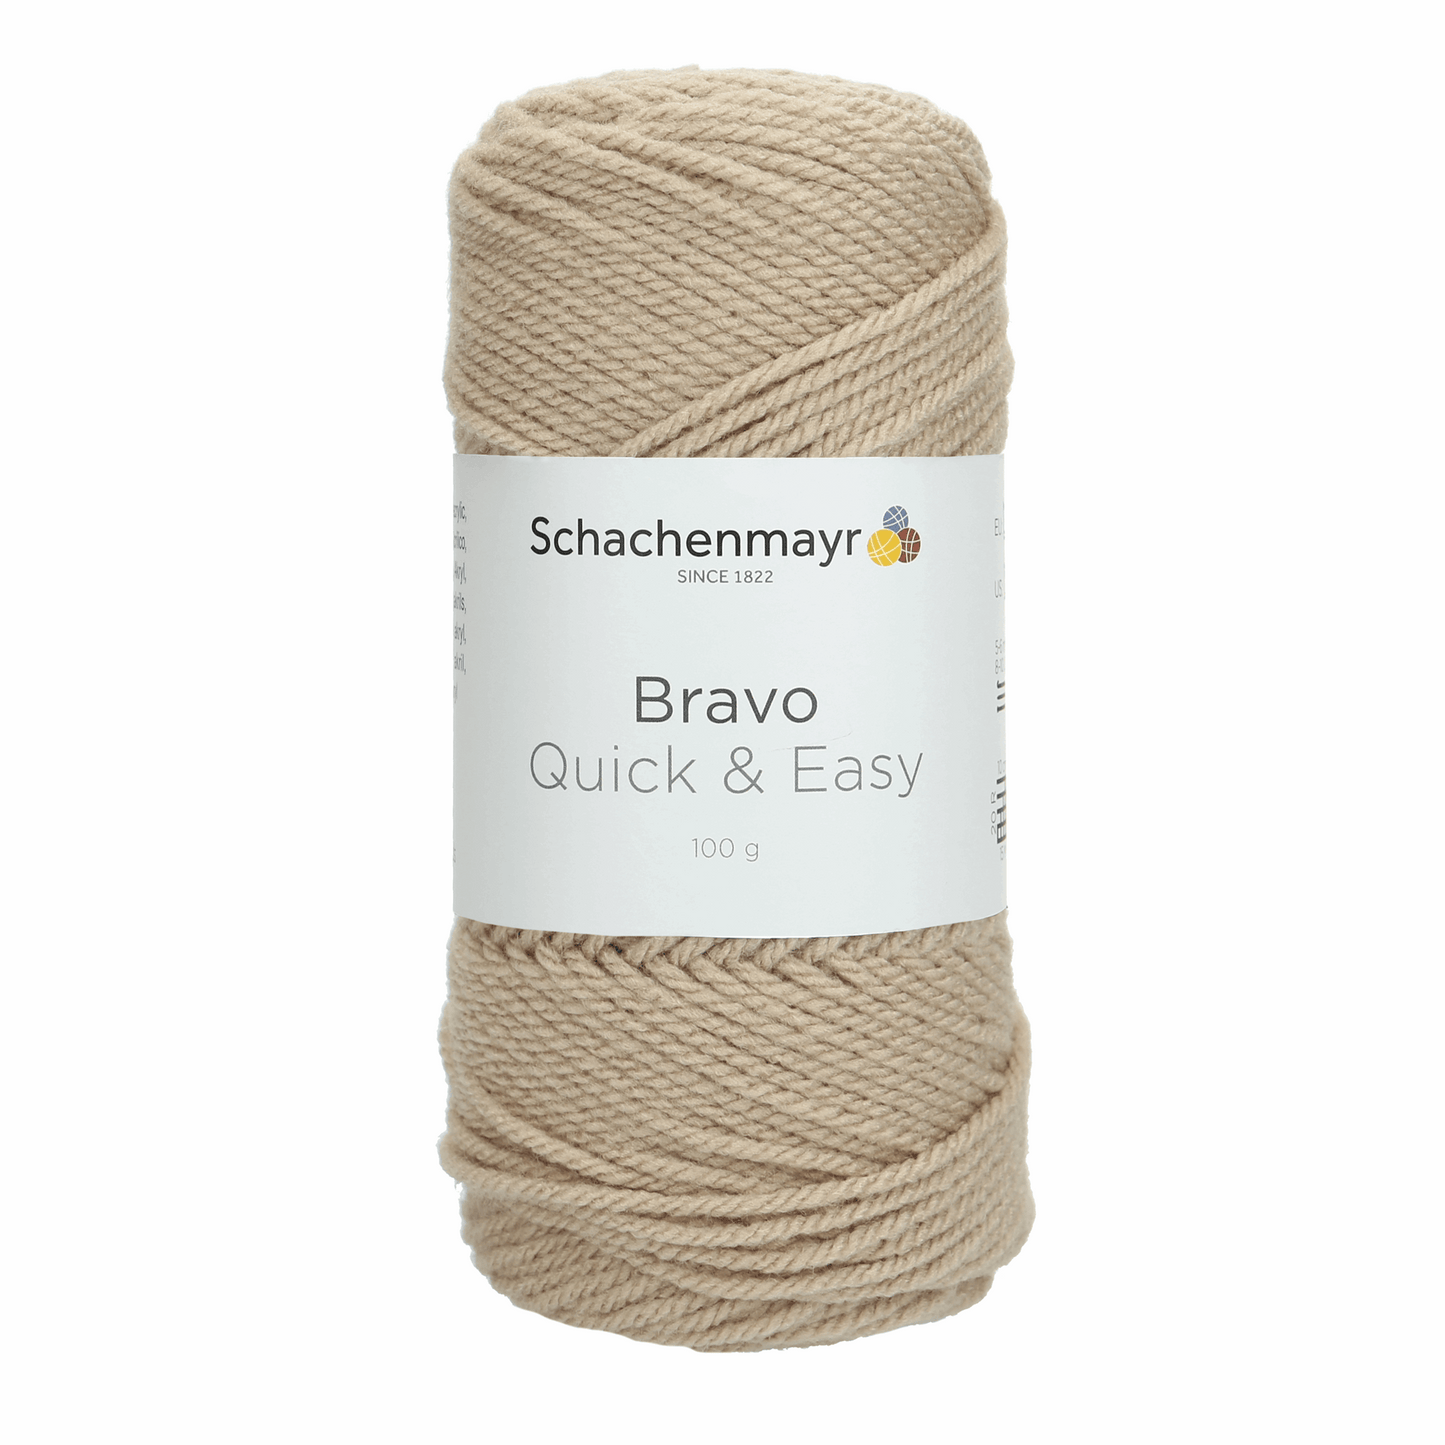 Schachenmayr Bravo quick & easy 100g, 90590, Farbe sisal meliert 8267